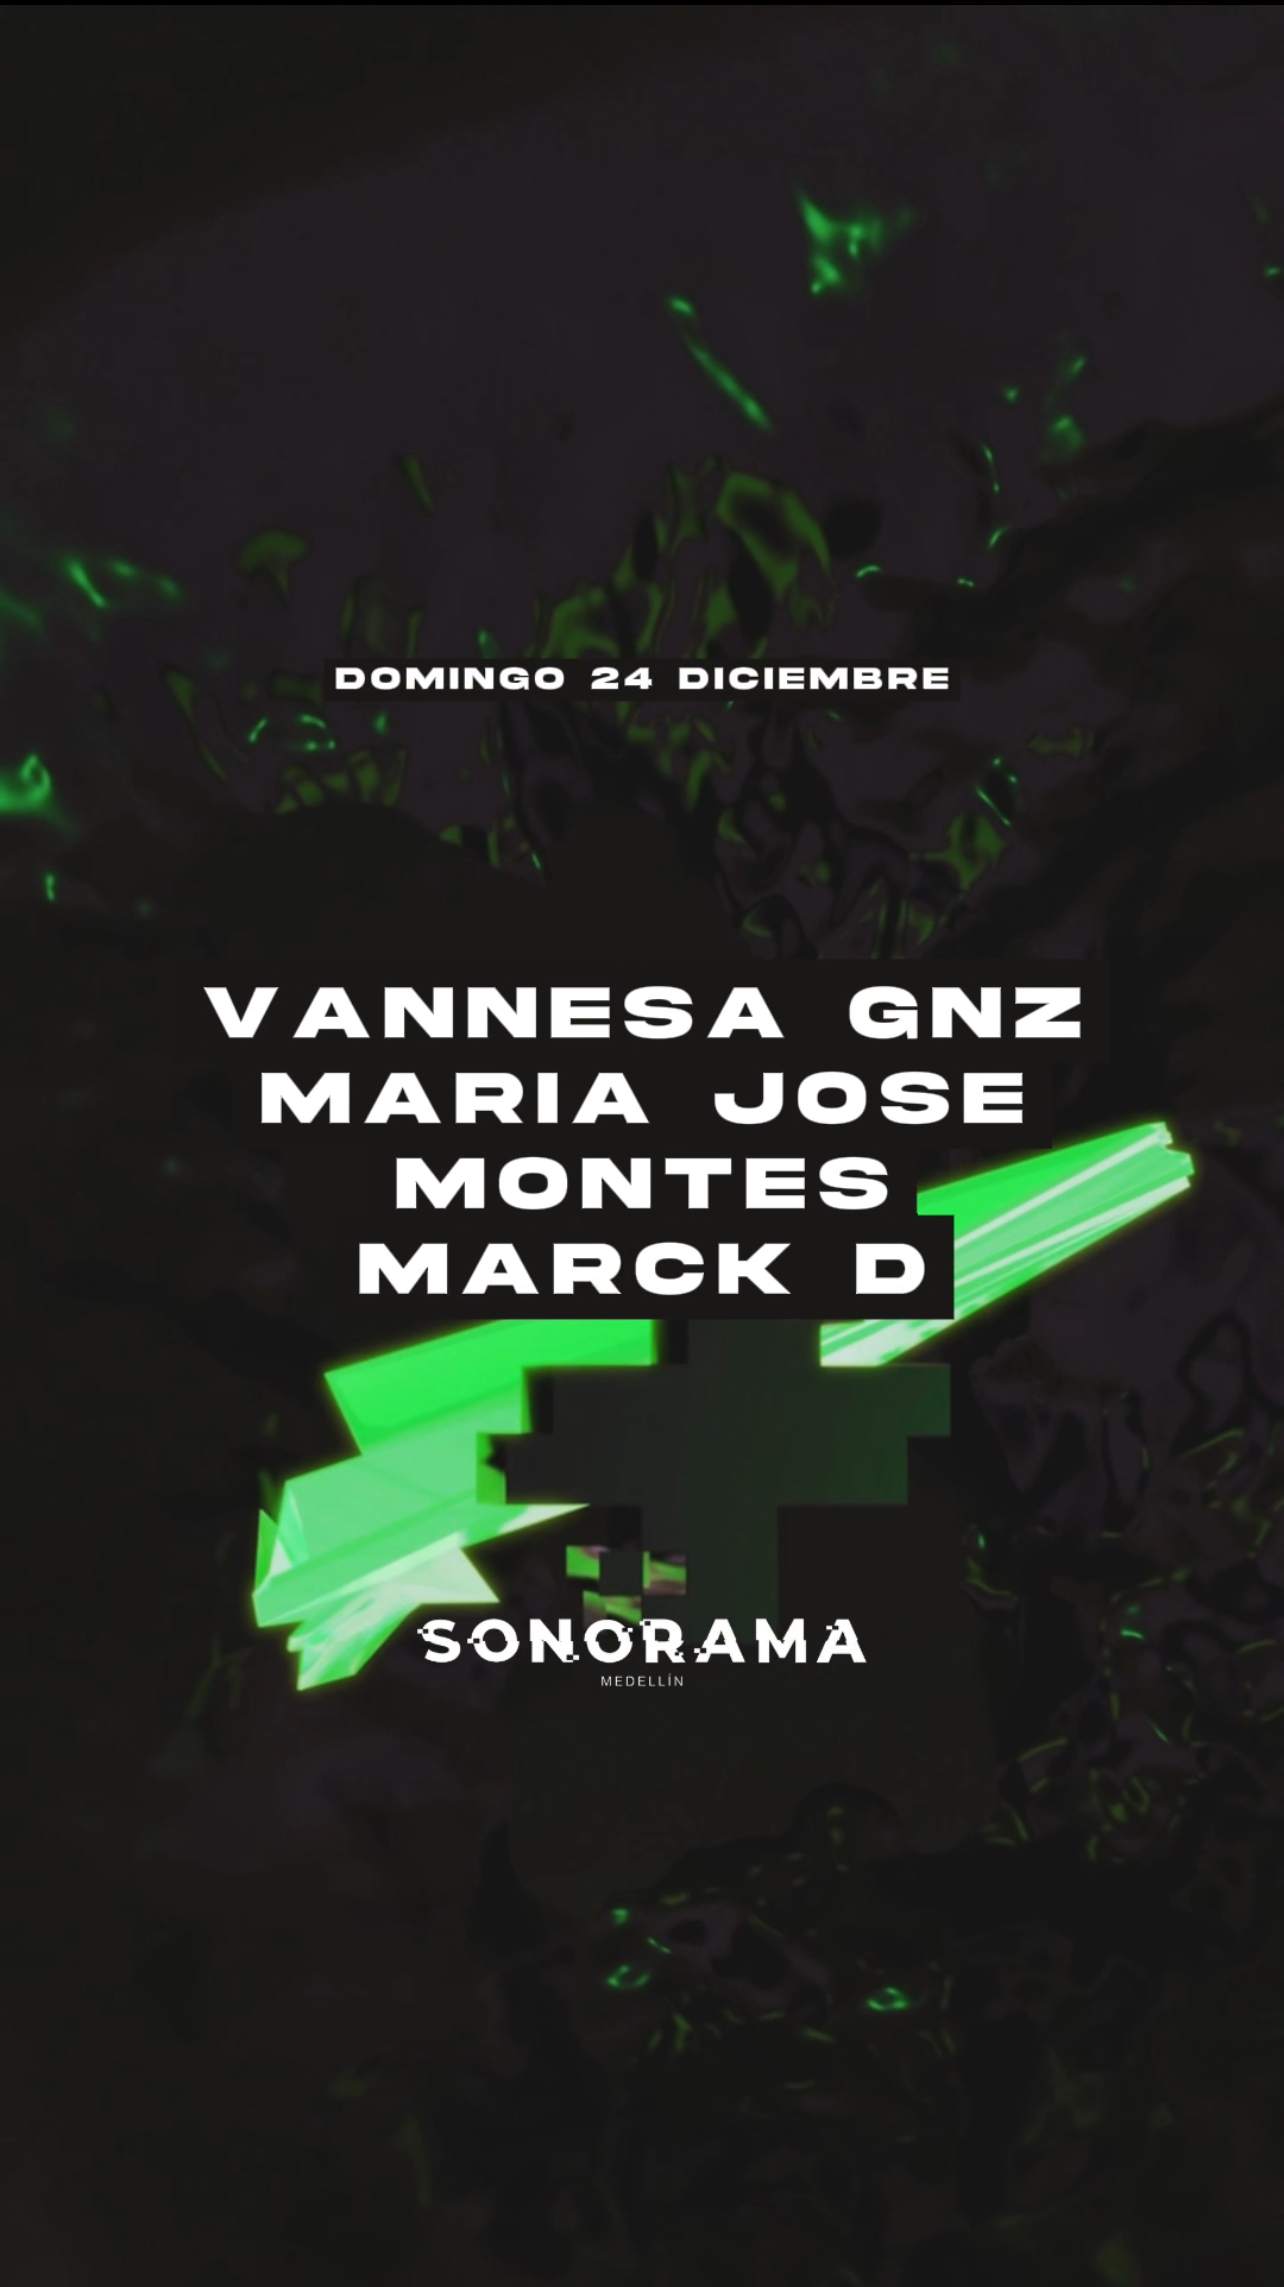 Sonorama Pres / Techno - フライヤー表